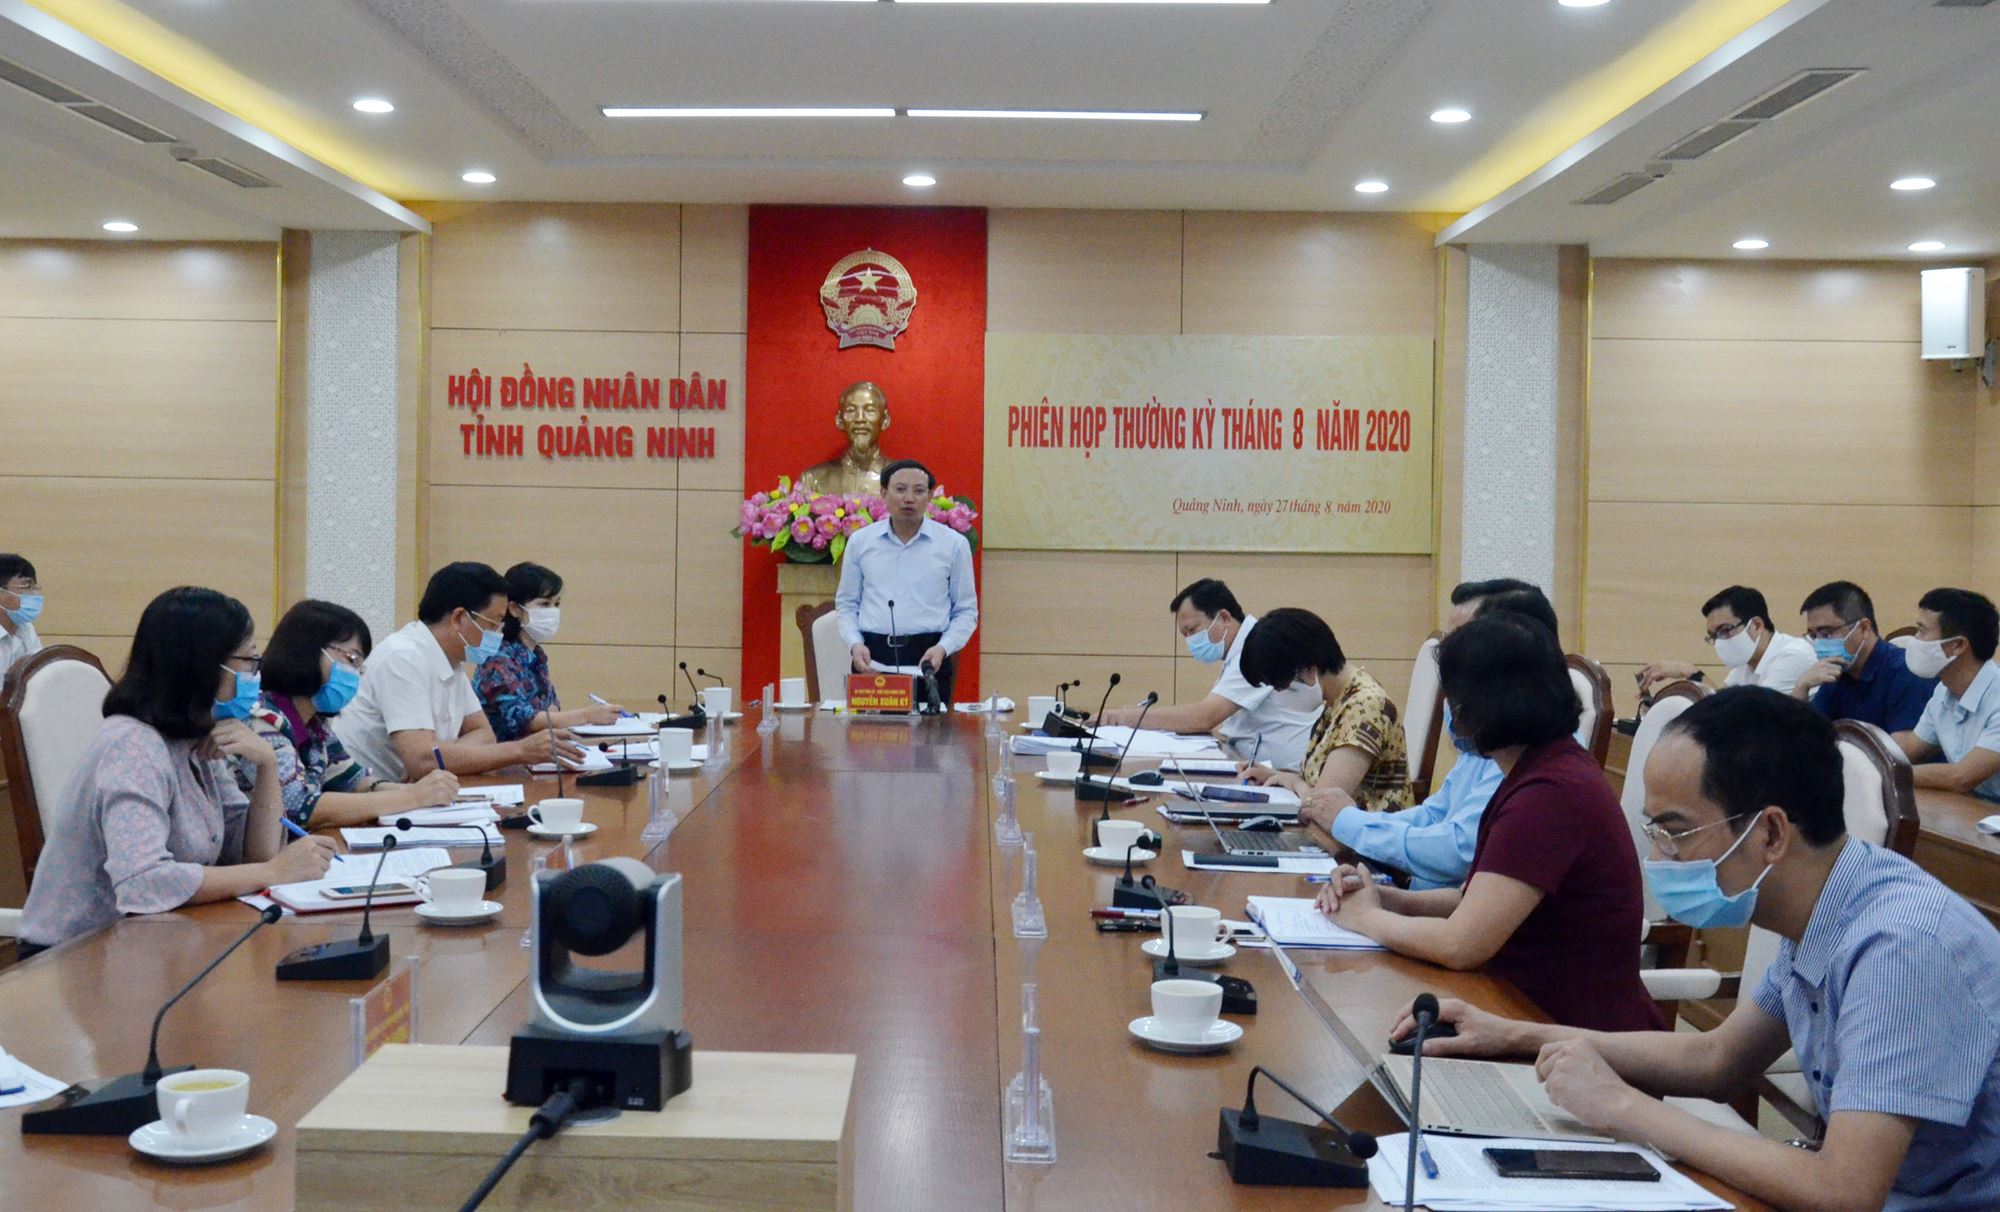 Đồng chí Nguyễn Xuân Ký, Bí thư Tỉnh ủy, Chủ tịch HĐND tỉnh phát biểu kết luận hội nghị.